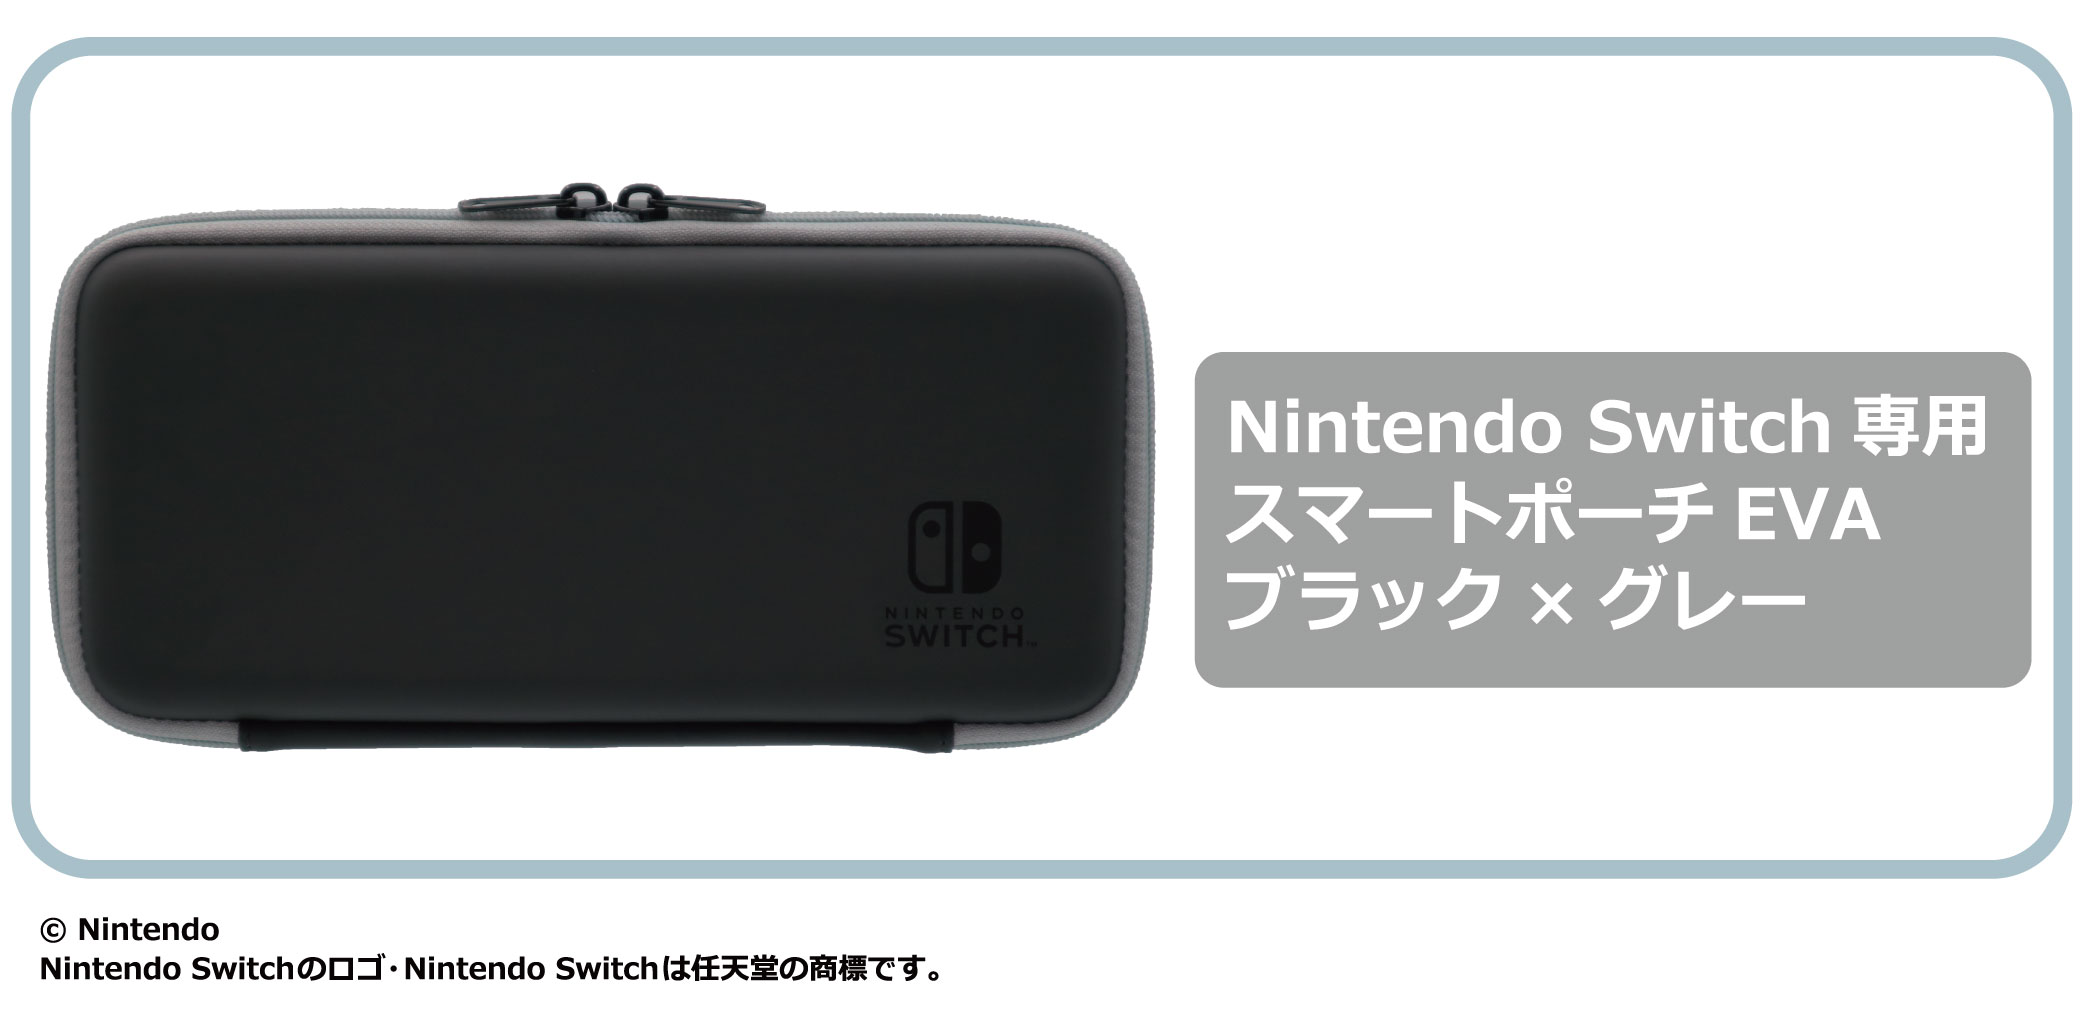 Nintendo Switch (有機ELモデル)に対応したアクセサリーがマックス 